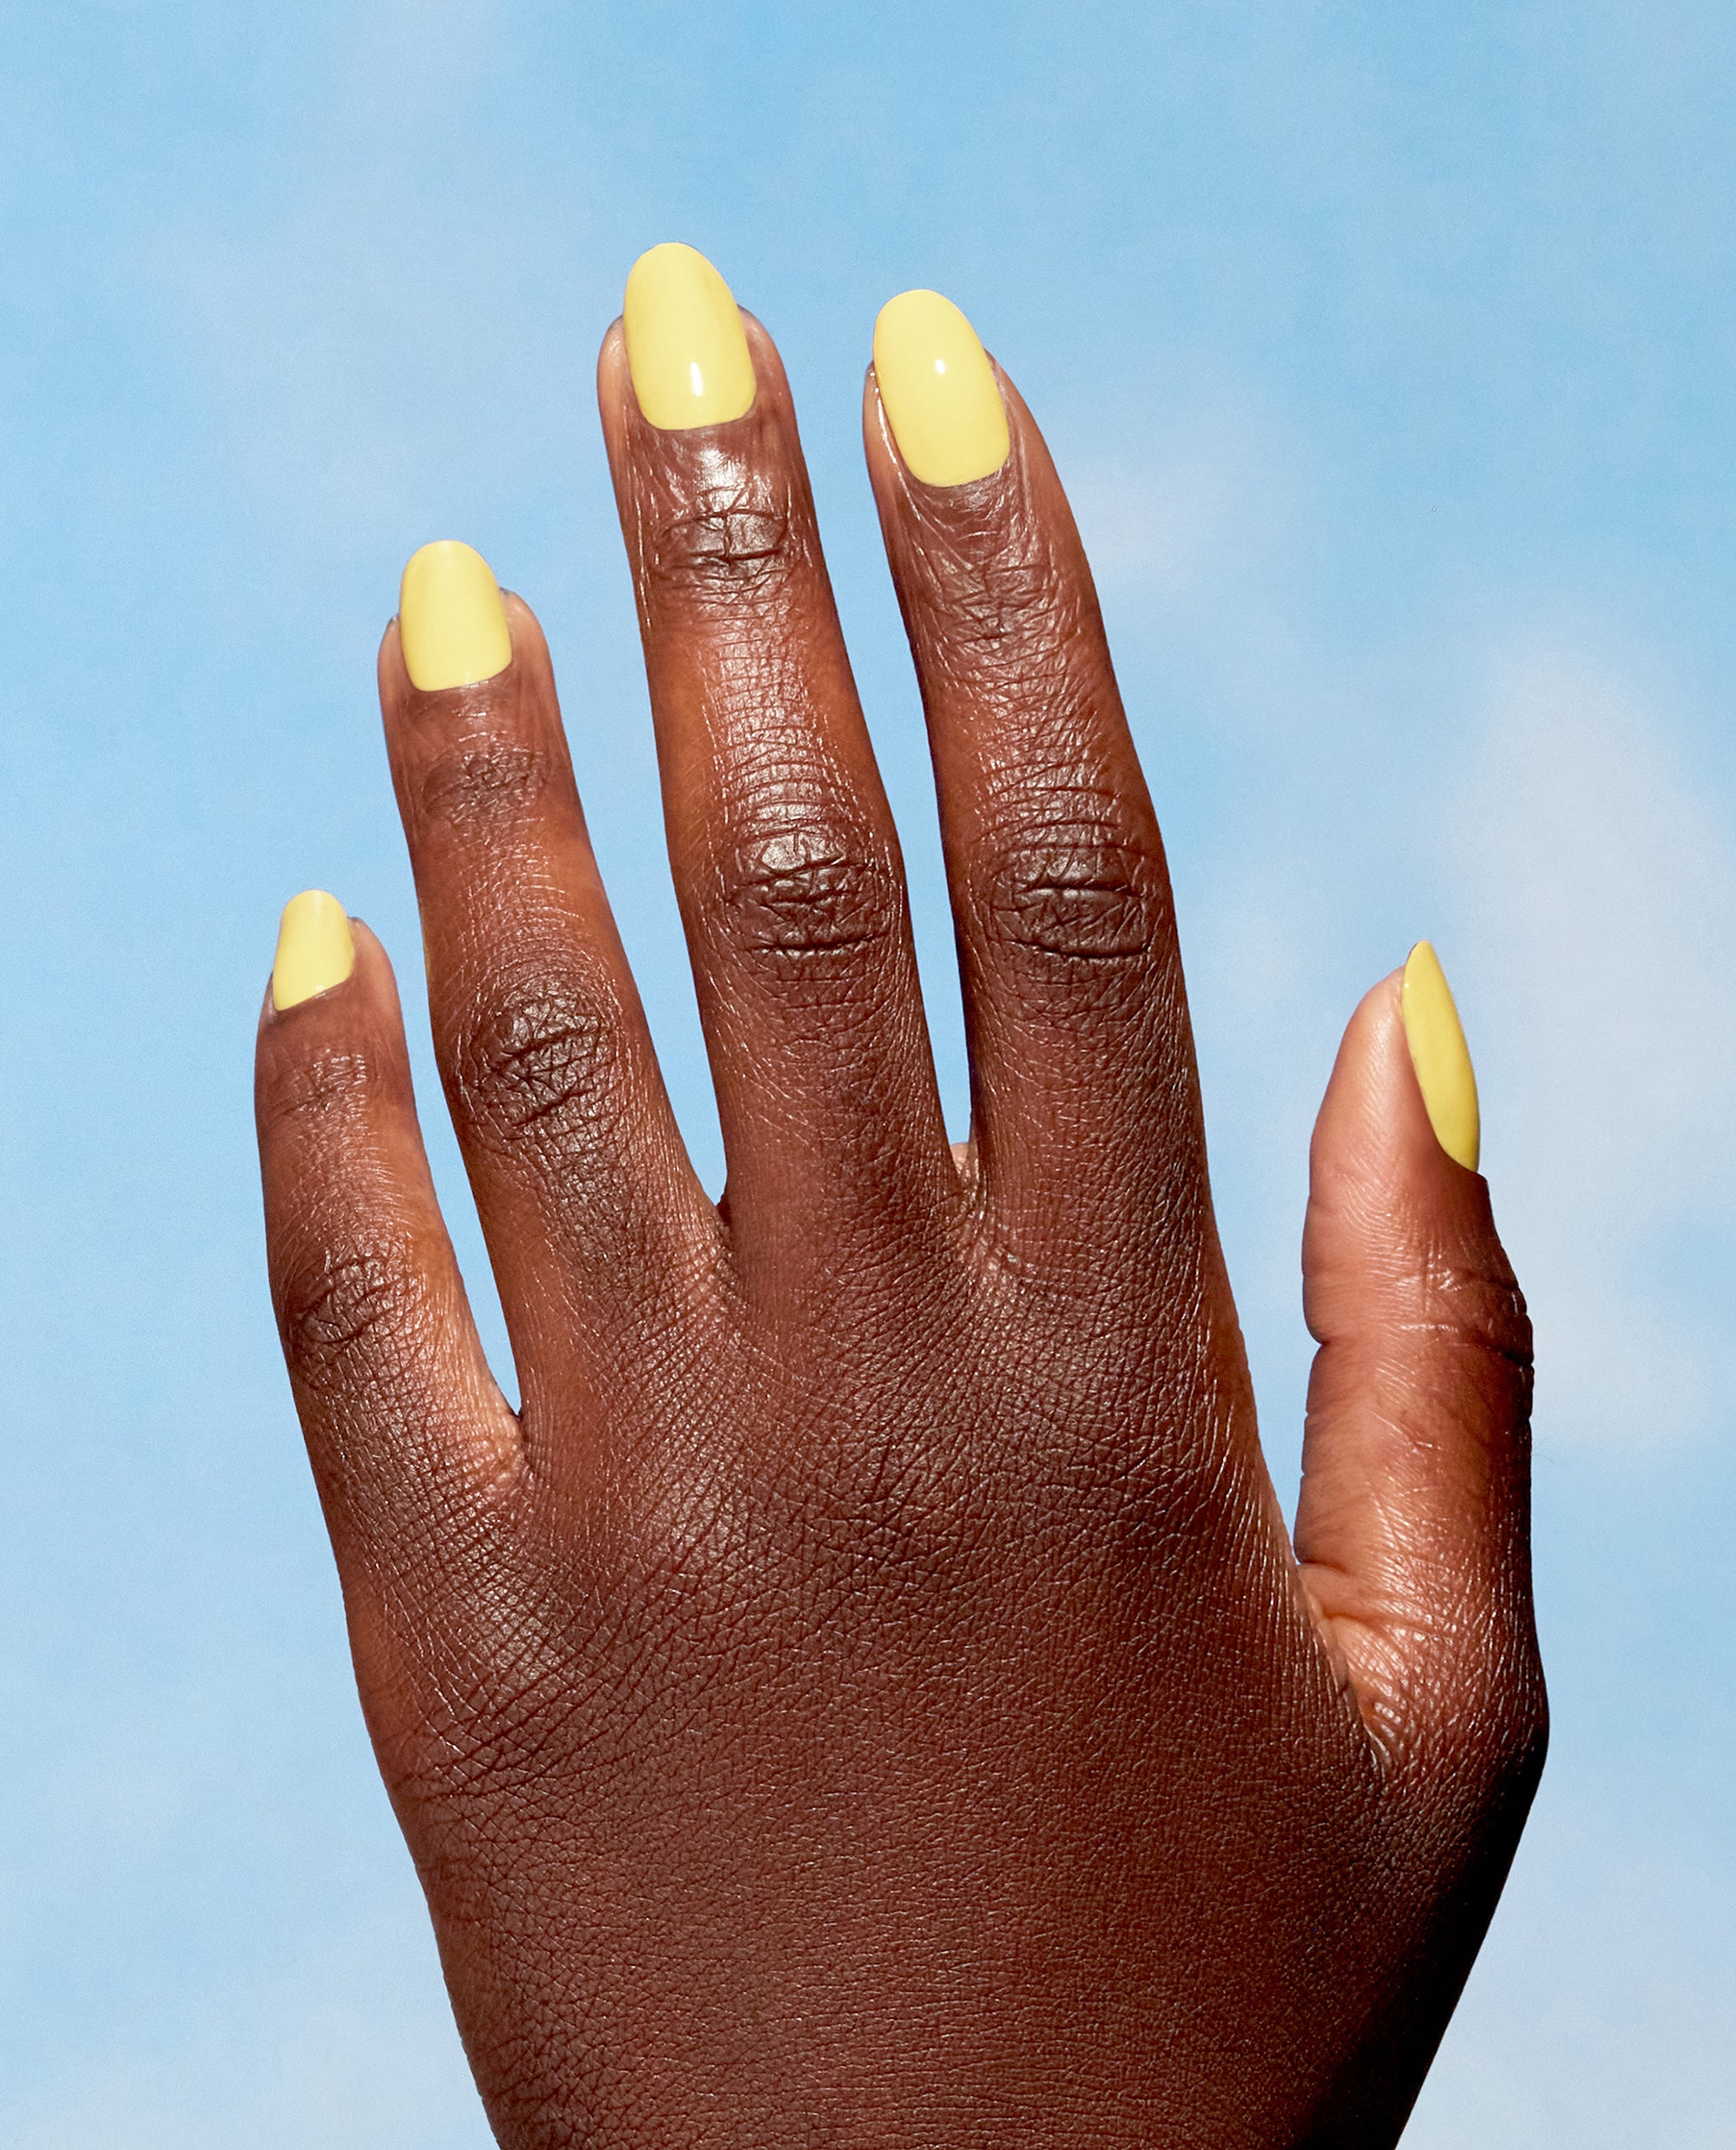 opi yellow nail polish